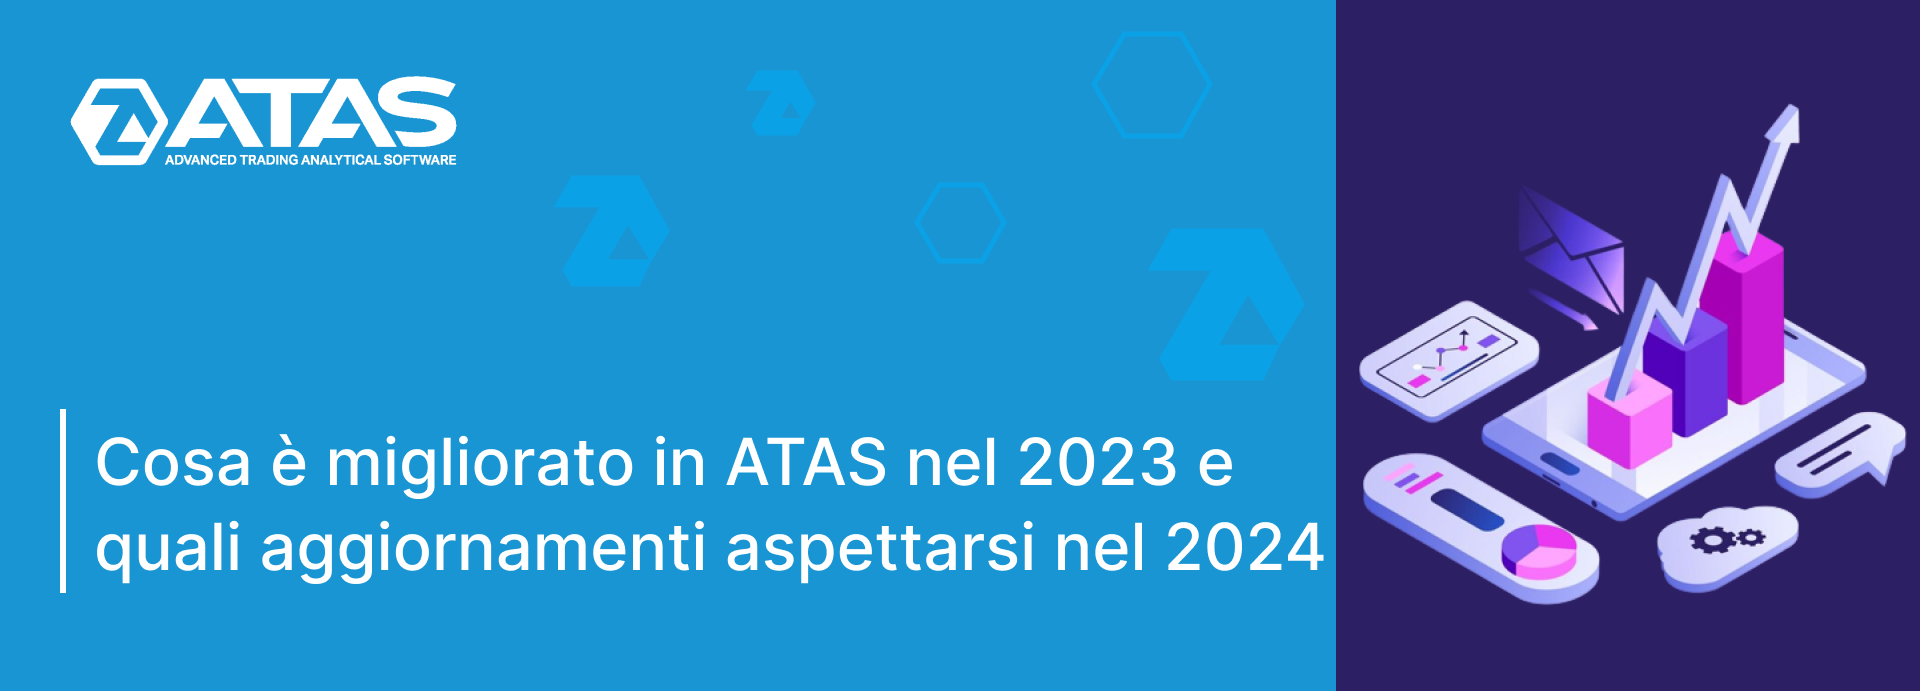 Cosa è migliorato in ATAS nel 2023 e quali aggiornamenti aspettarsi nel 2024